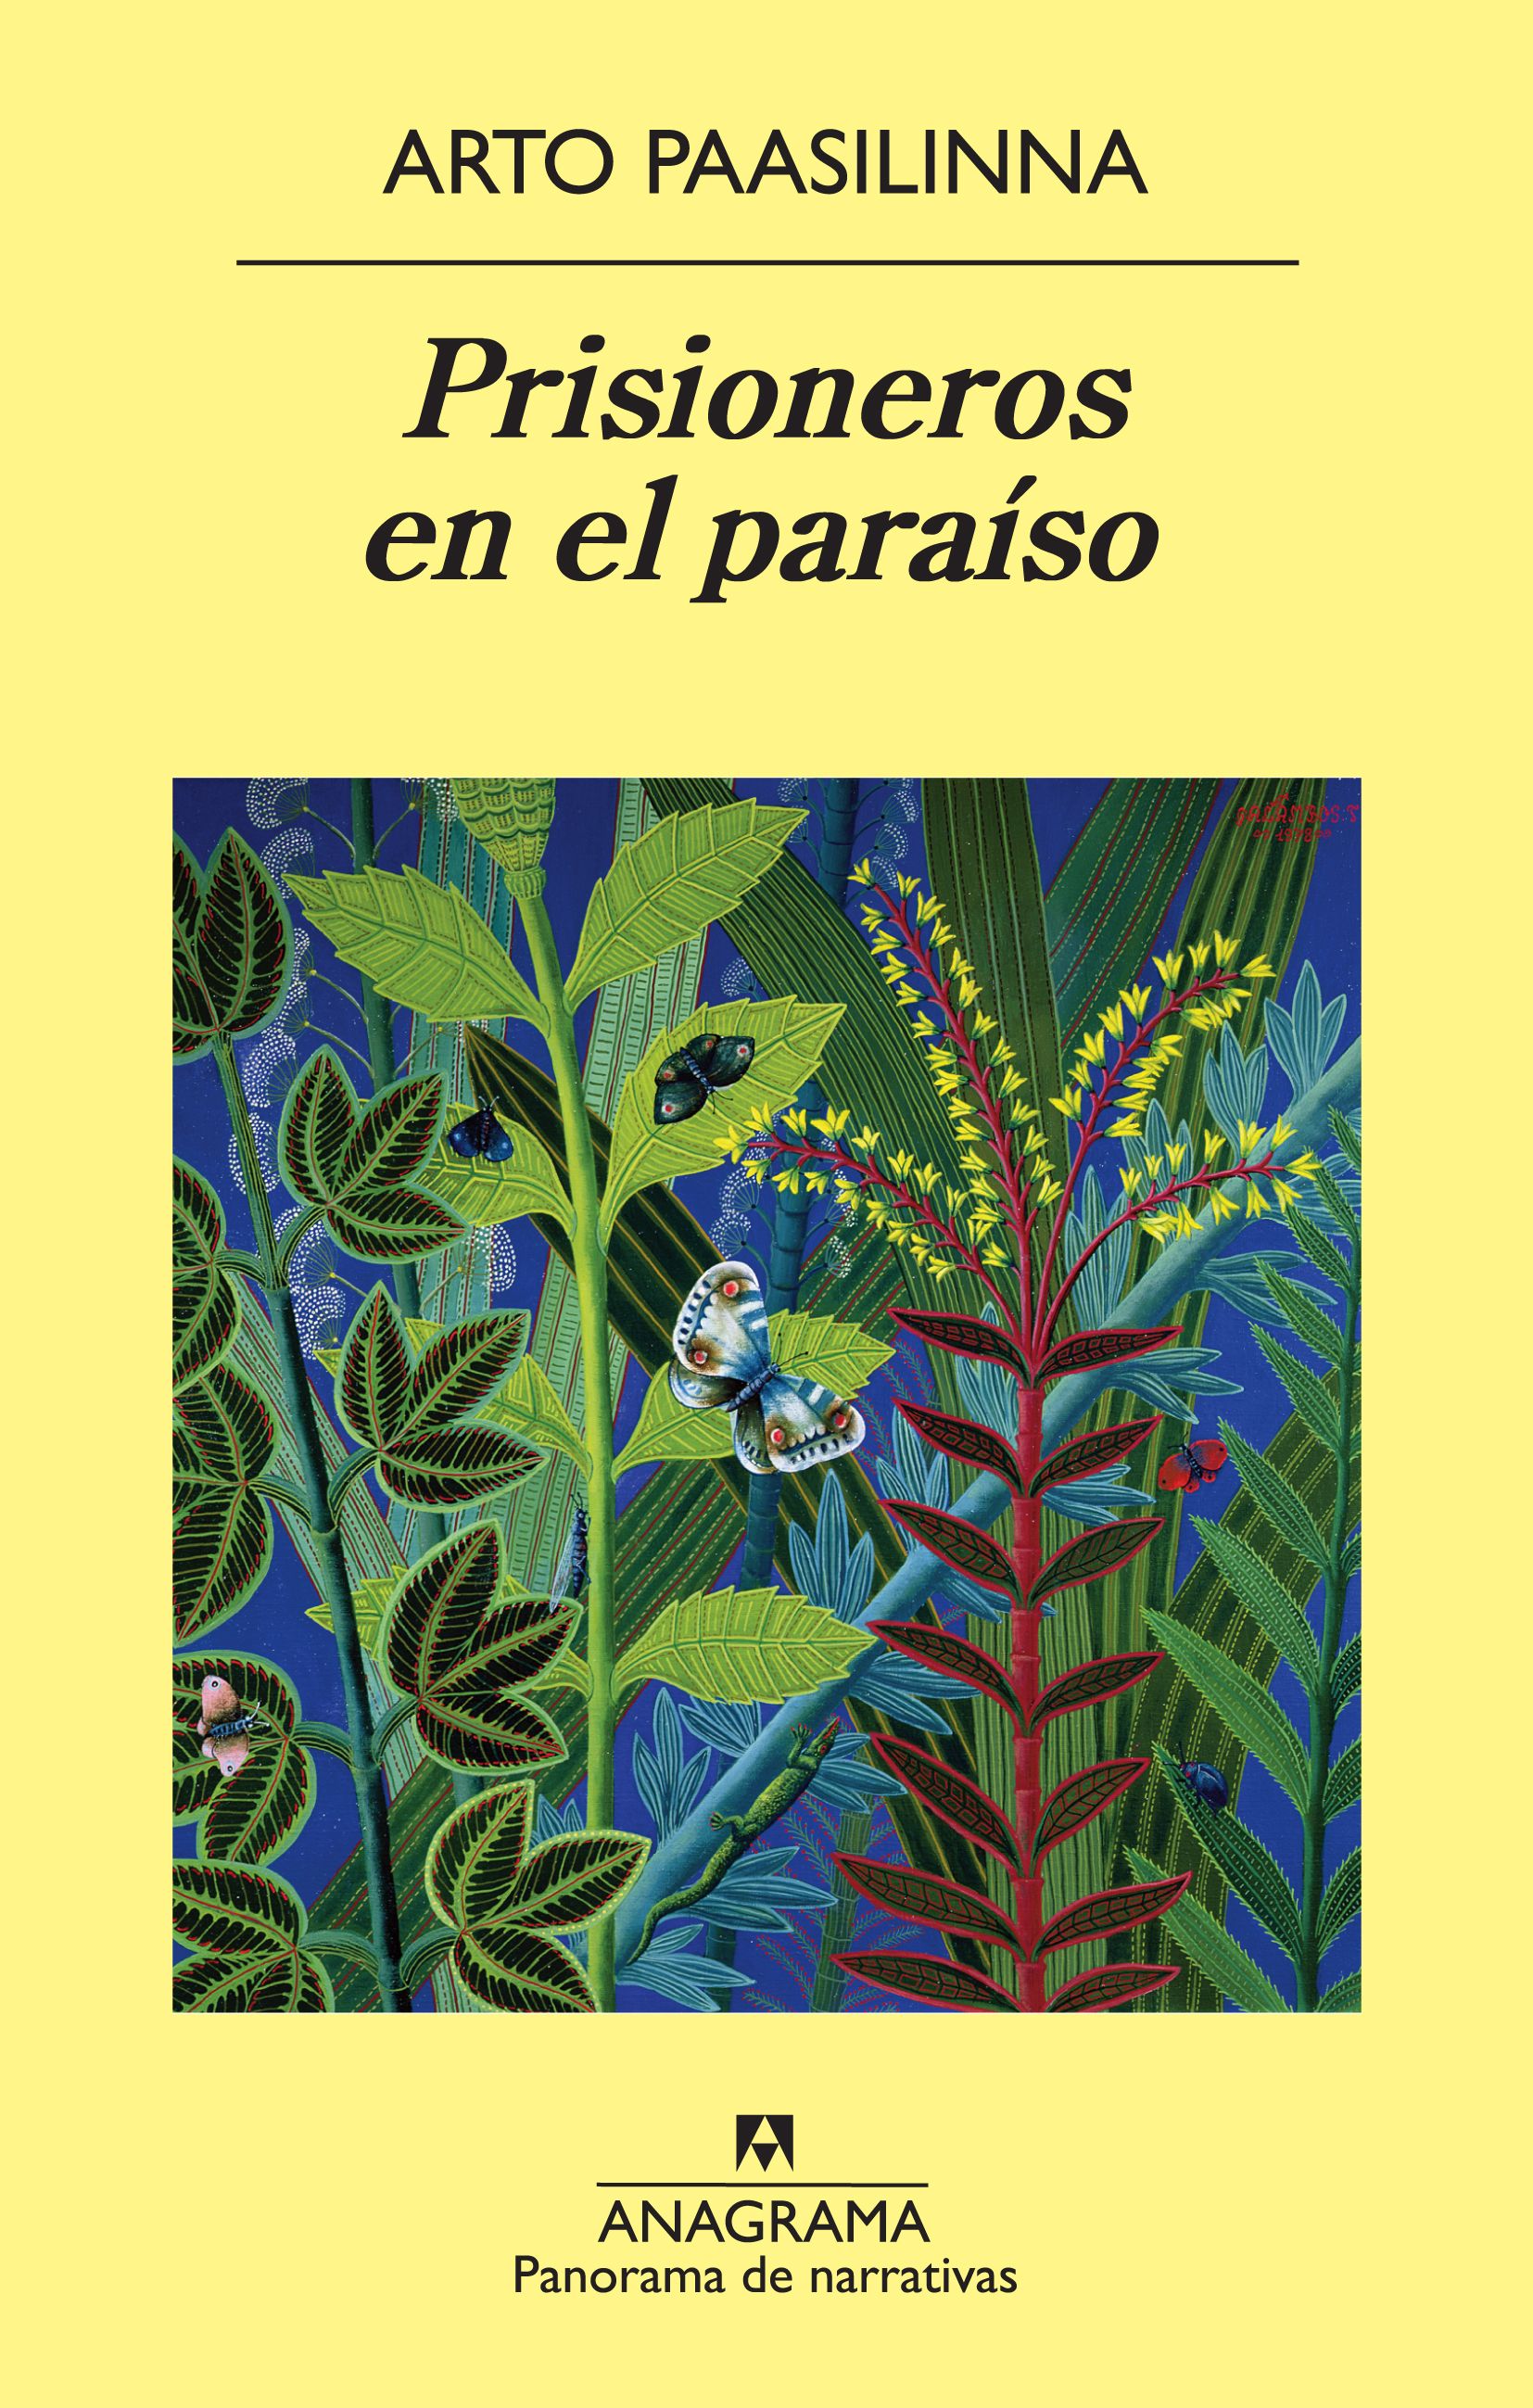 Prisioneros en el paraíso - Paasilinna, Arto - 978-84-339-7851-6 -  Editorial Anagrama